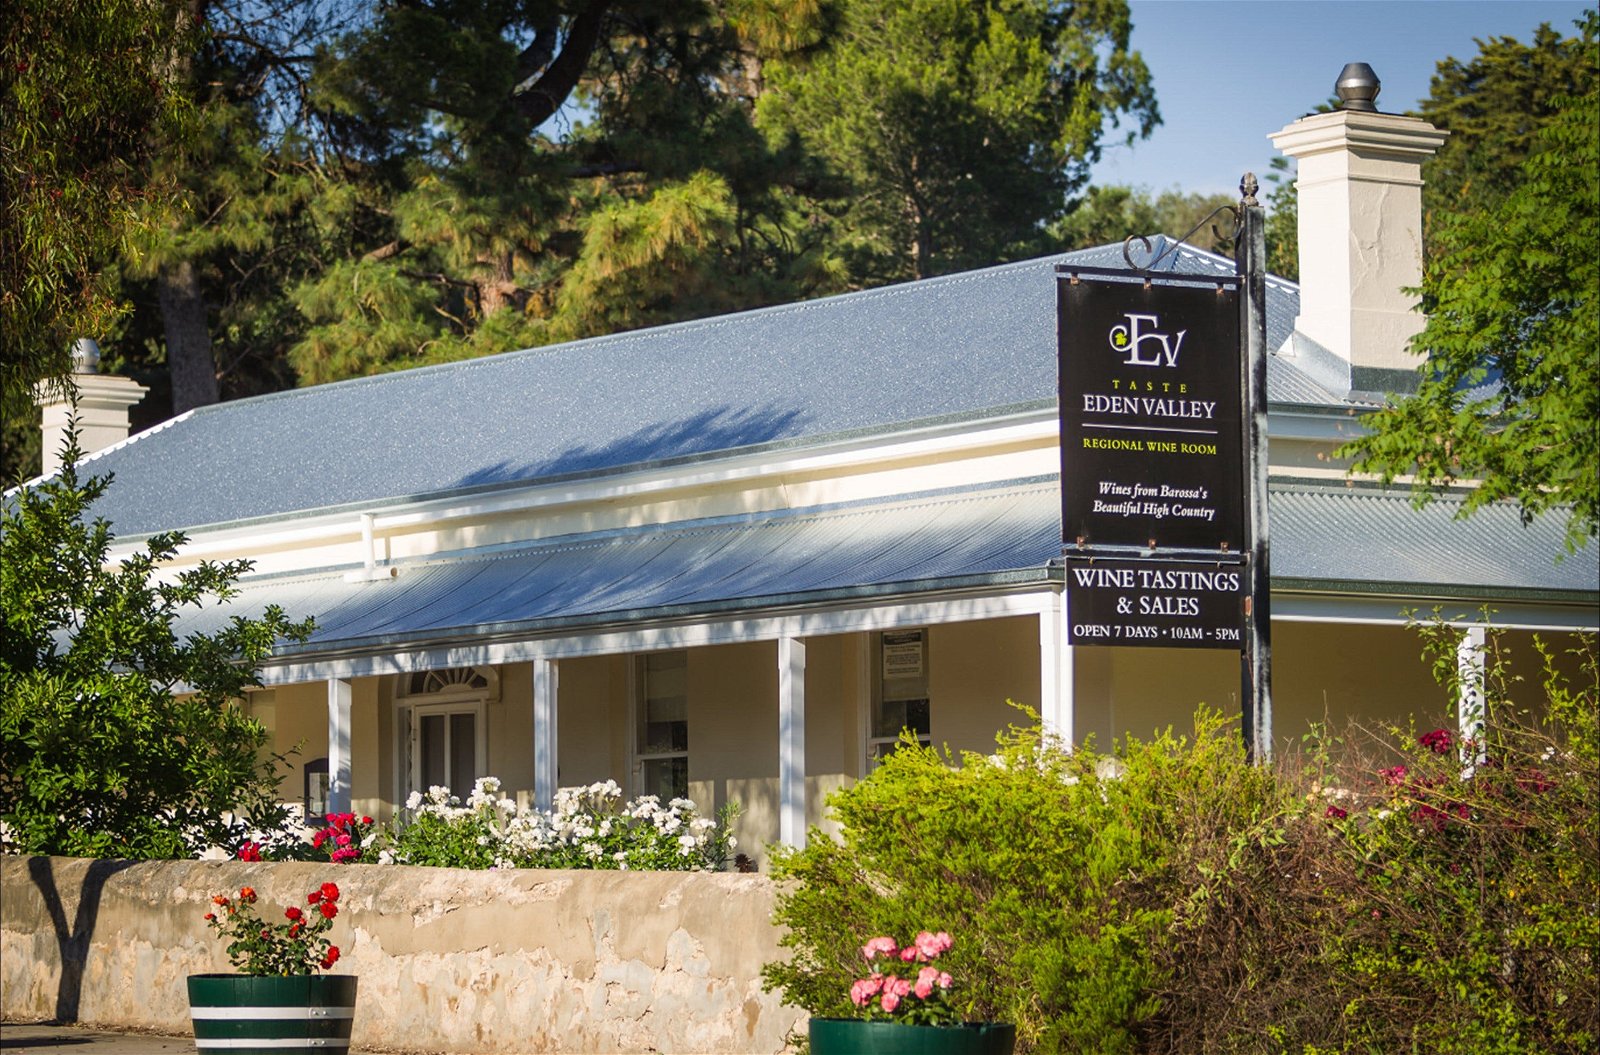 Taste Eden Valley Regional Wine Room - Tourism Gold Coast